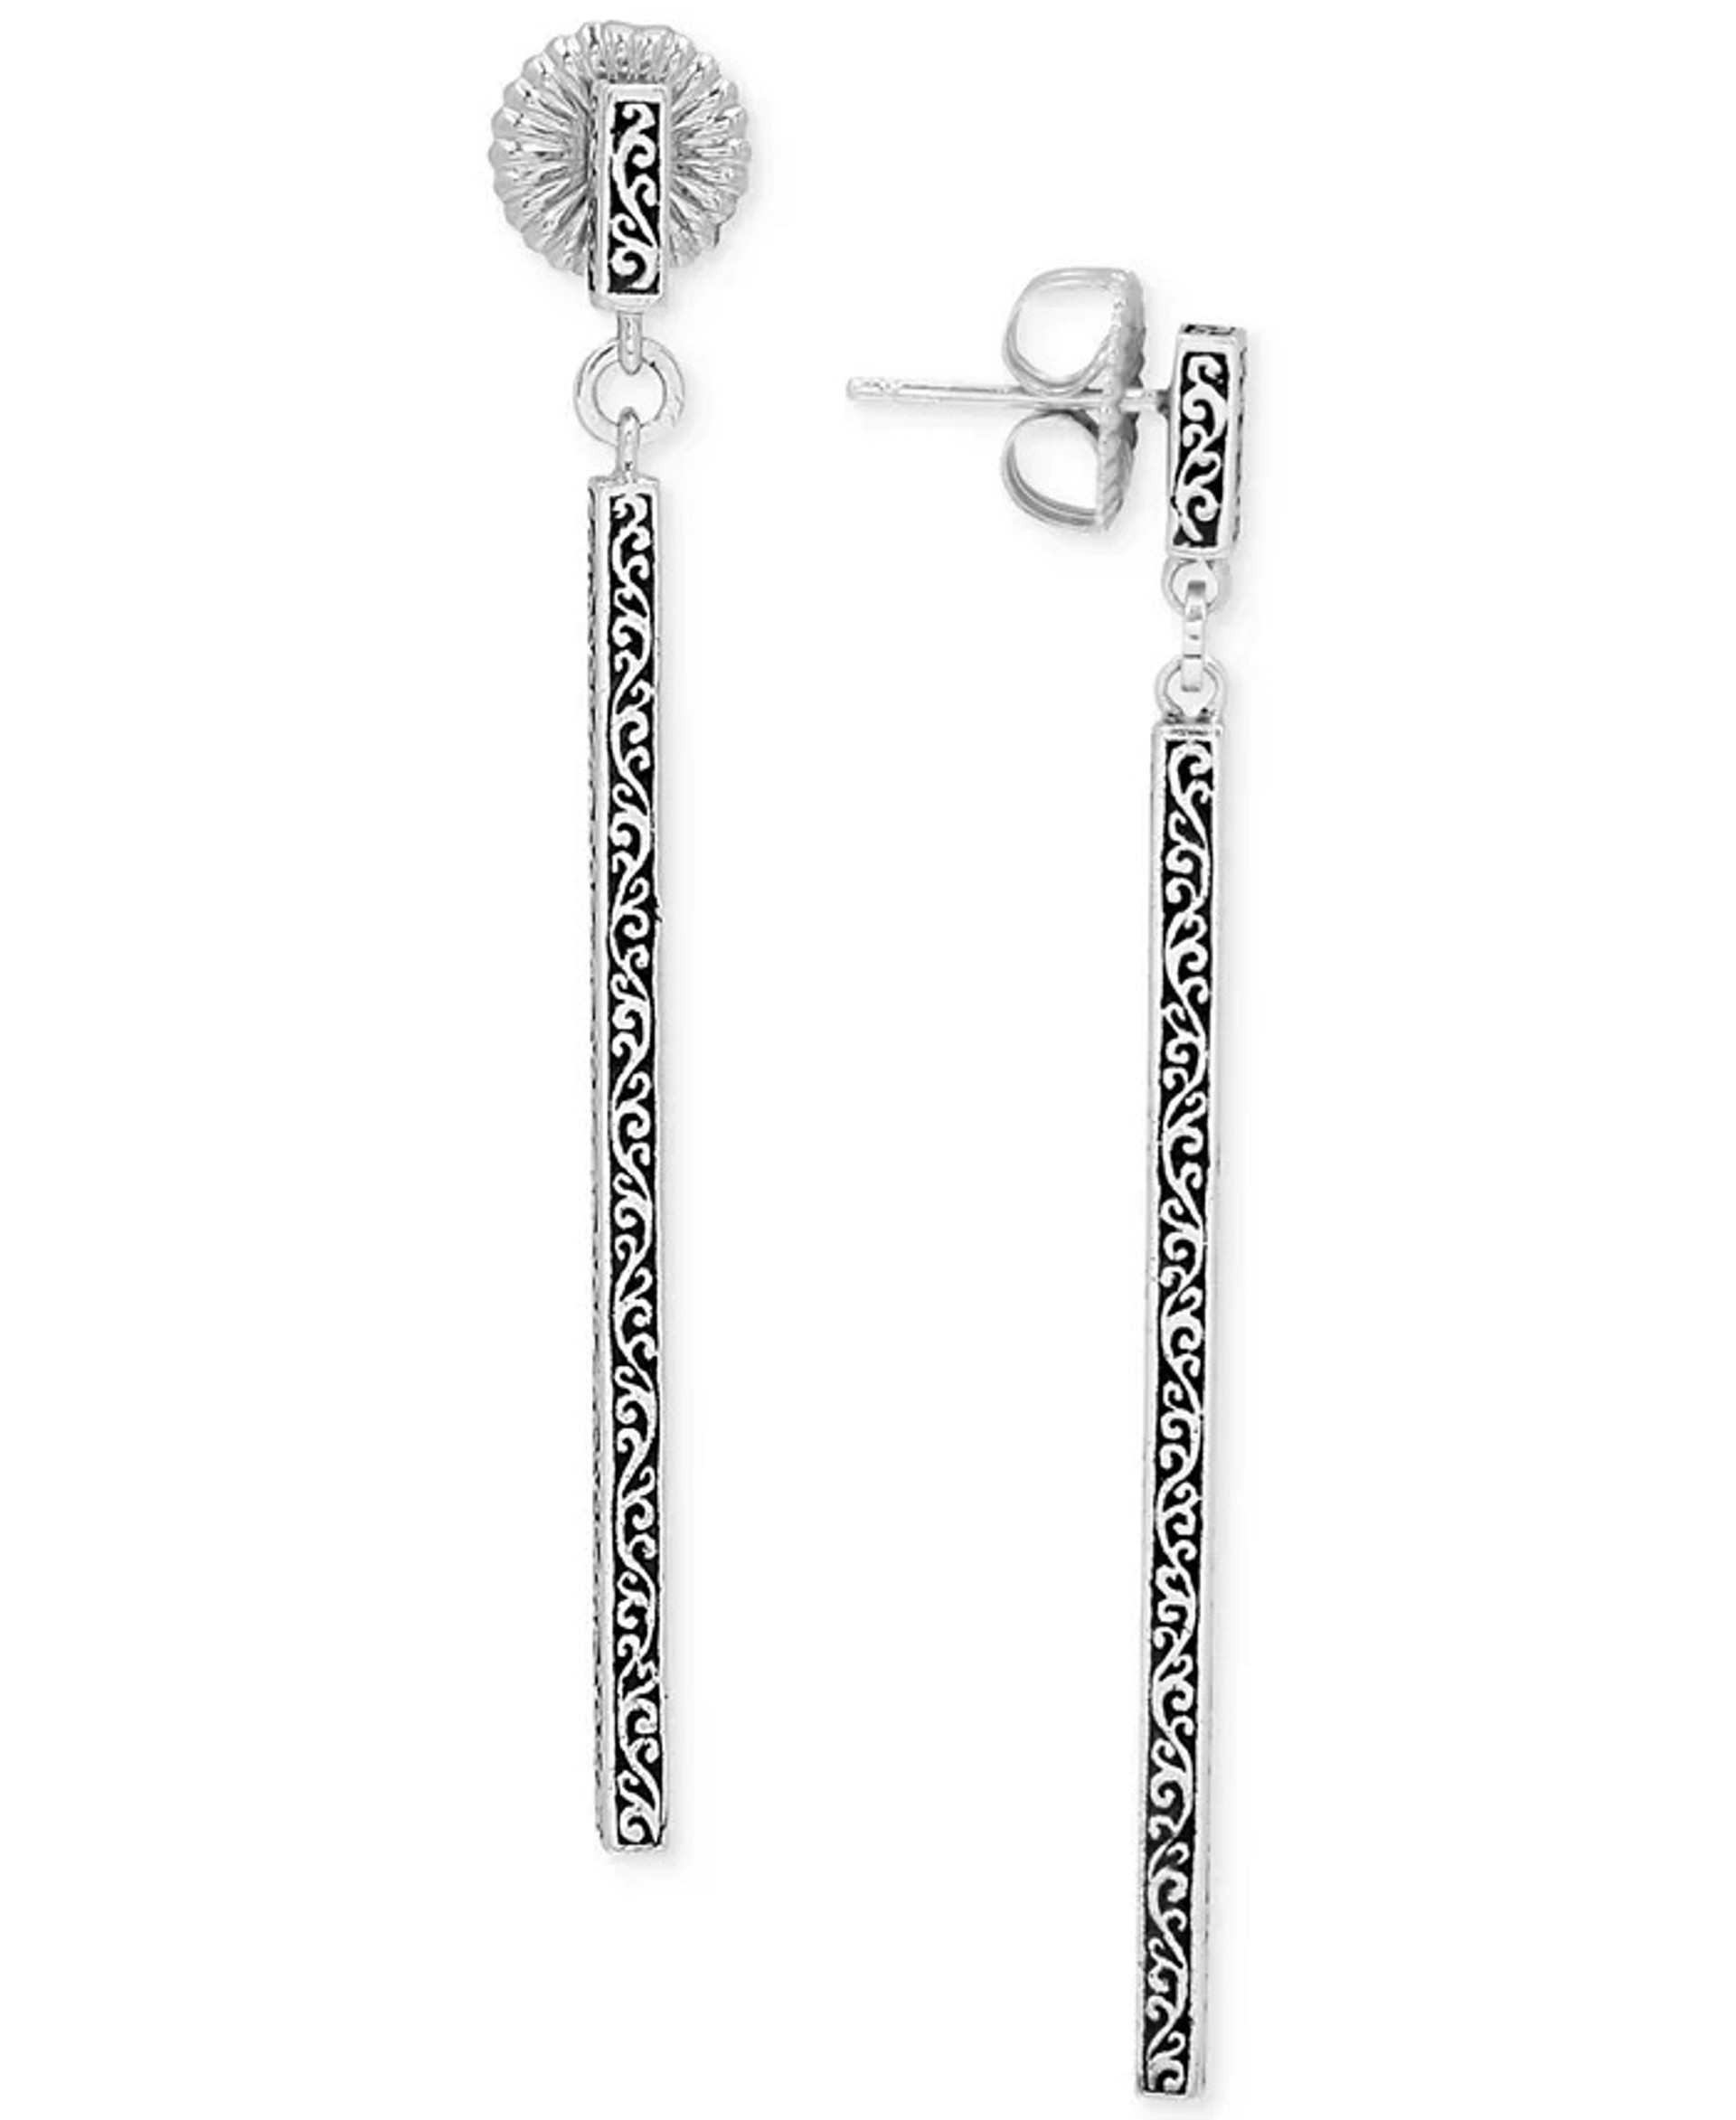 7654 Filigree Stick Linear Drop Earrings in Sterling Silver by Lois Hill